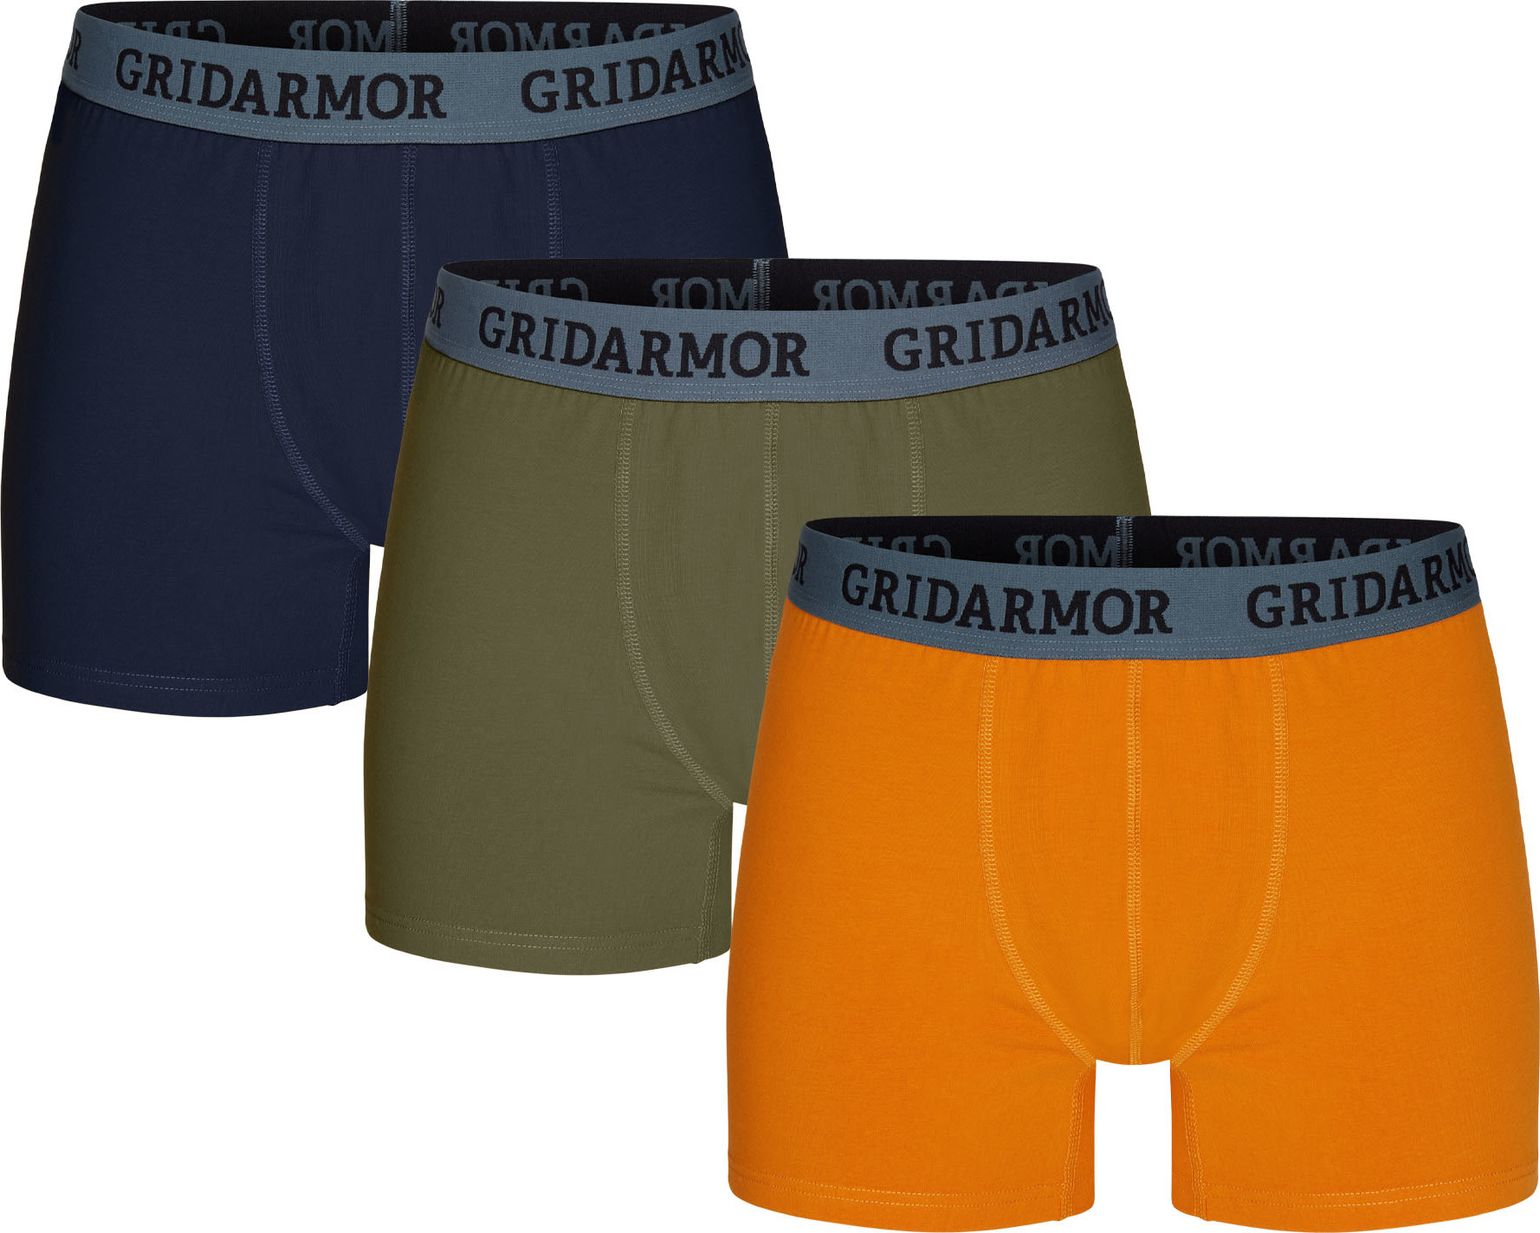 Gridarmor Men's Steine 3p Cotton Boxers 2.0 Multi Color